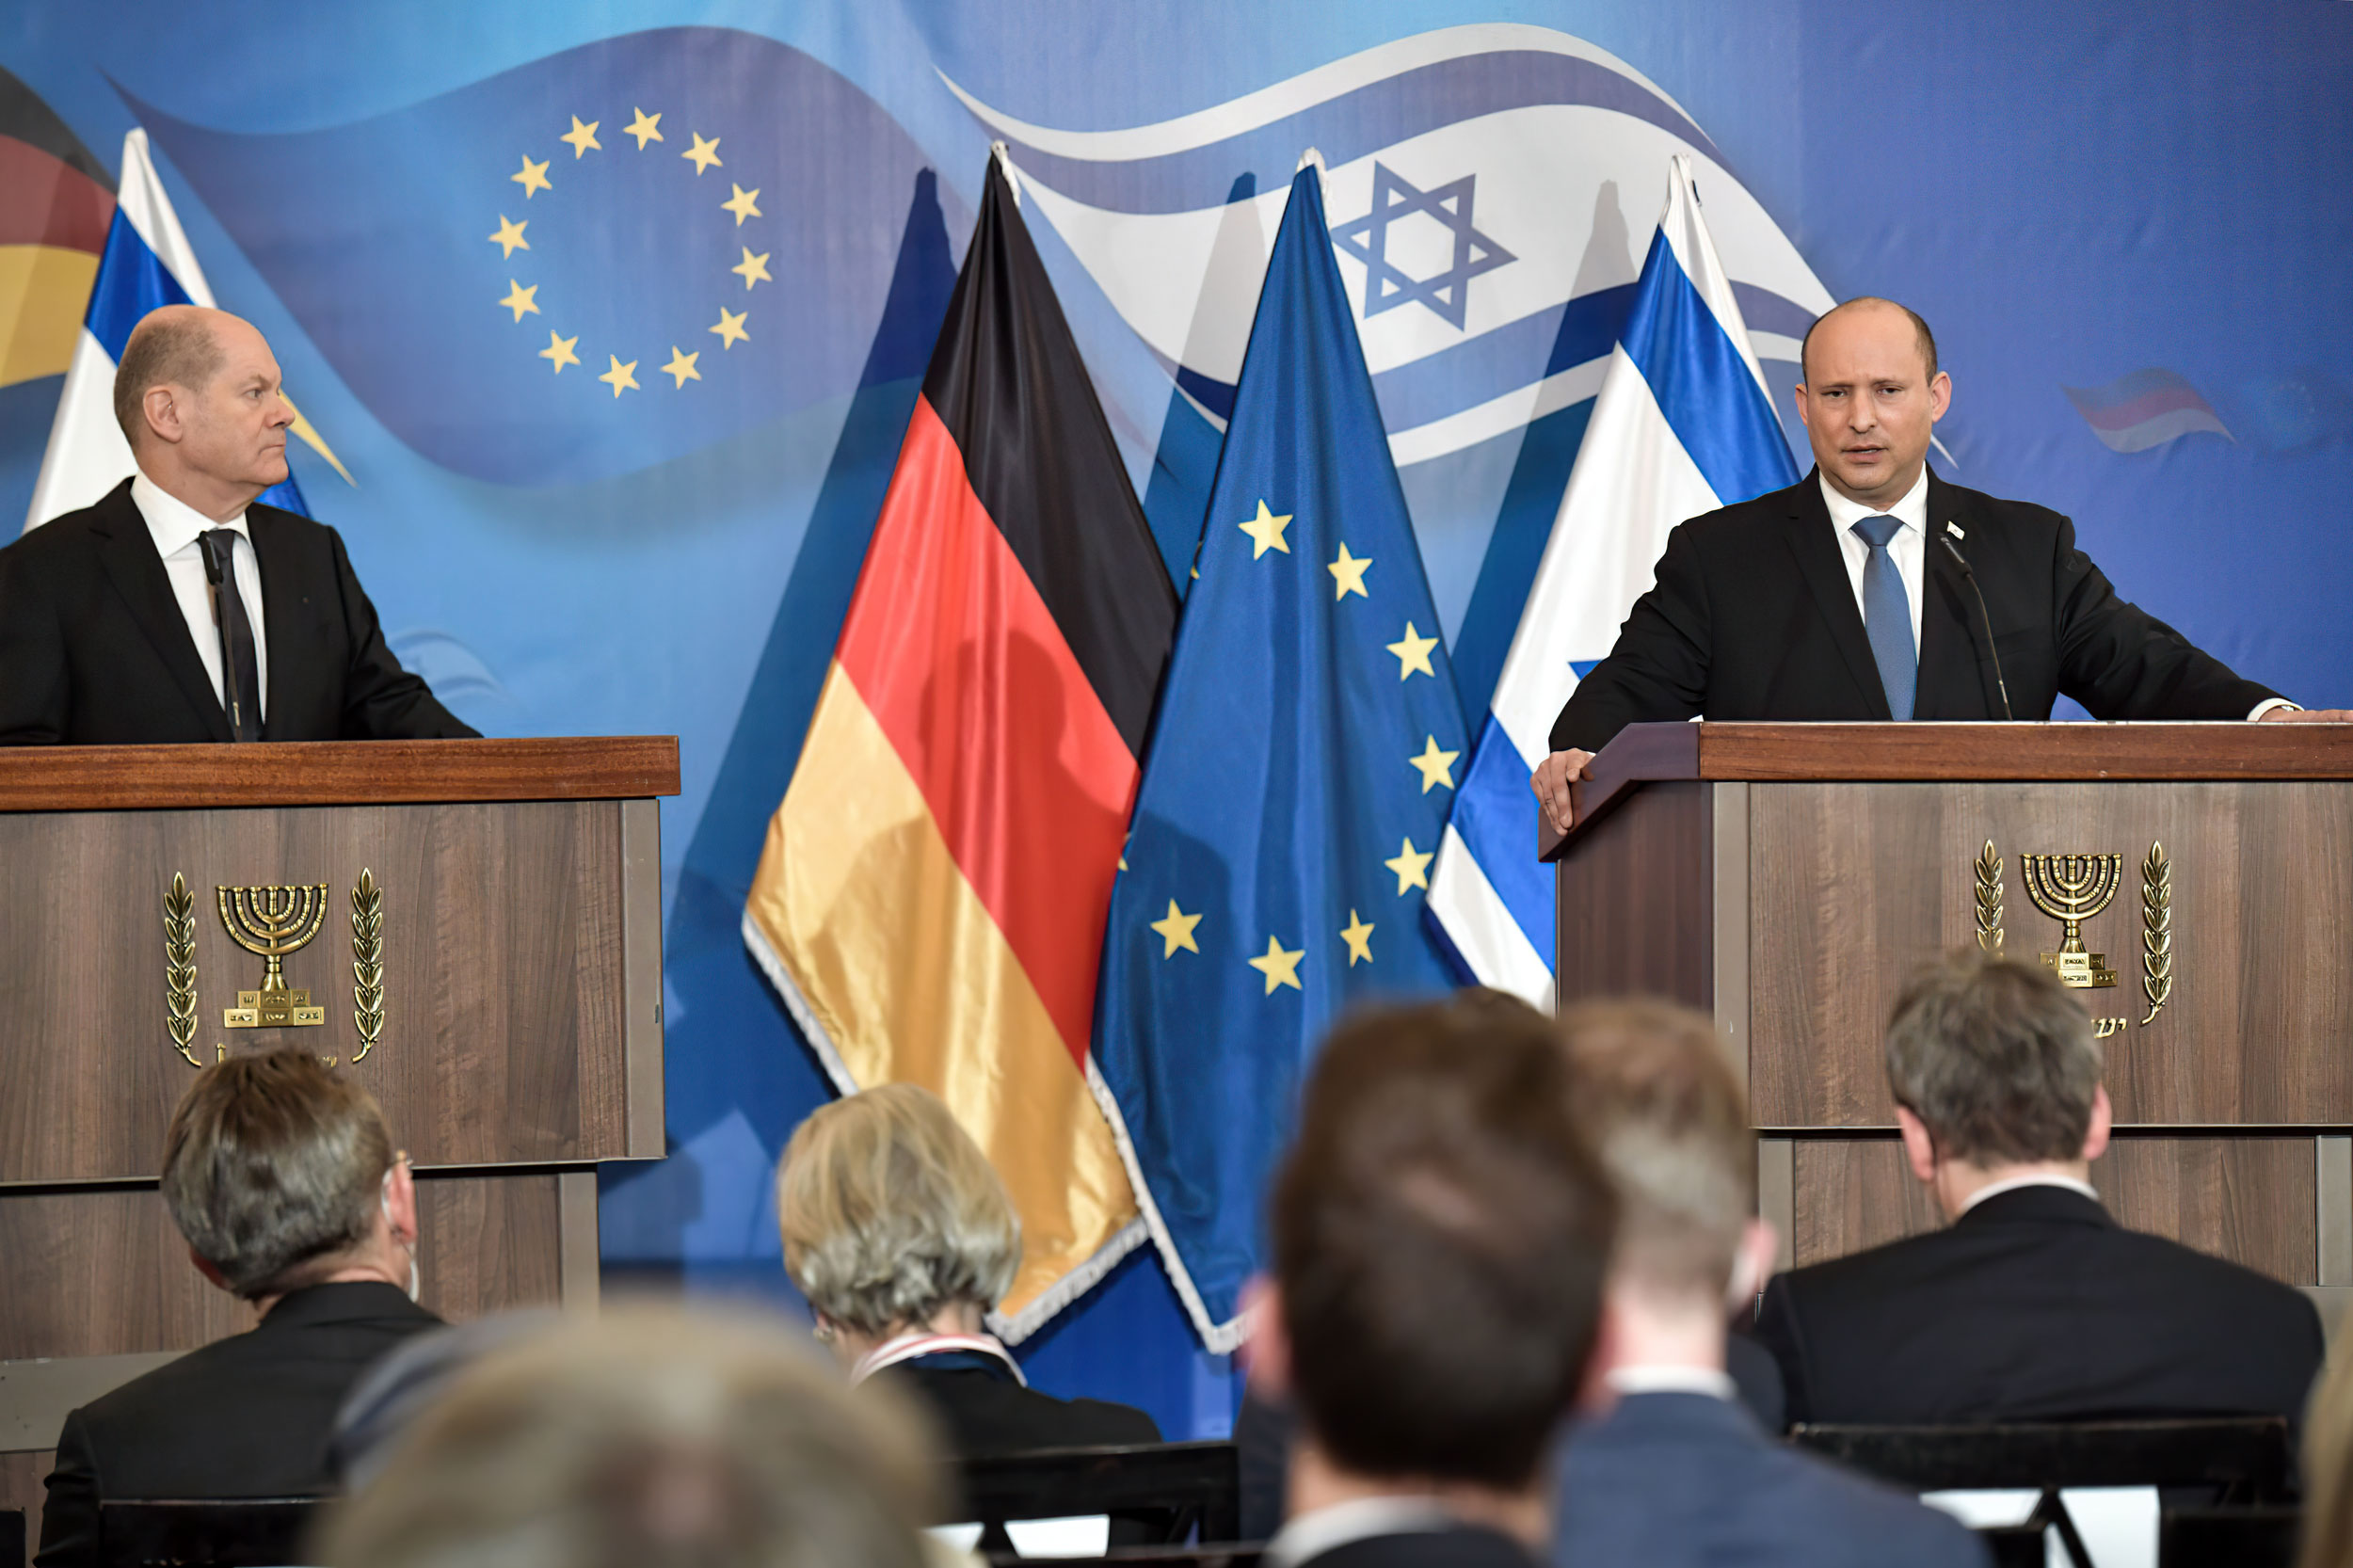 Выборы премьер министра германии. Нафтали Беннет и Шольц. Бенет премьер Израиля.